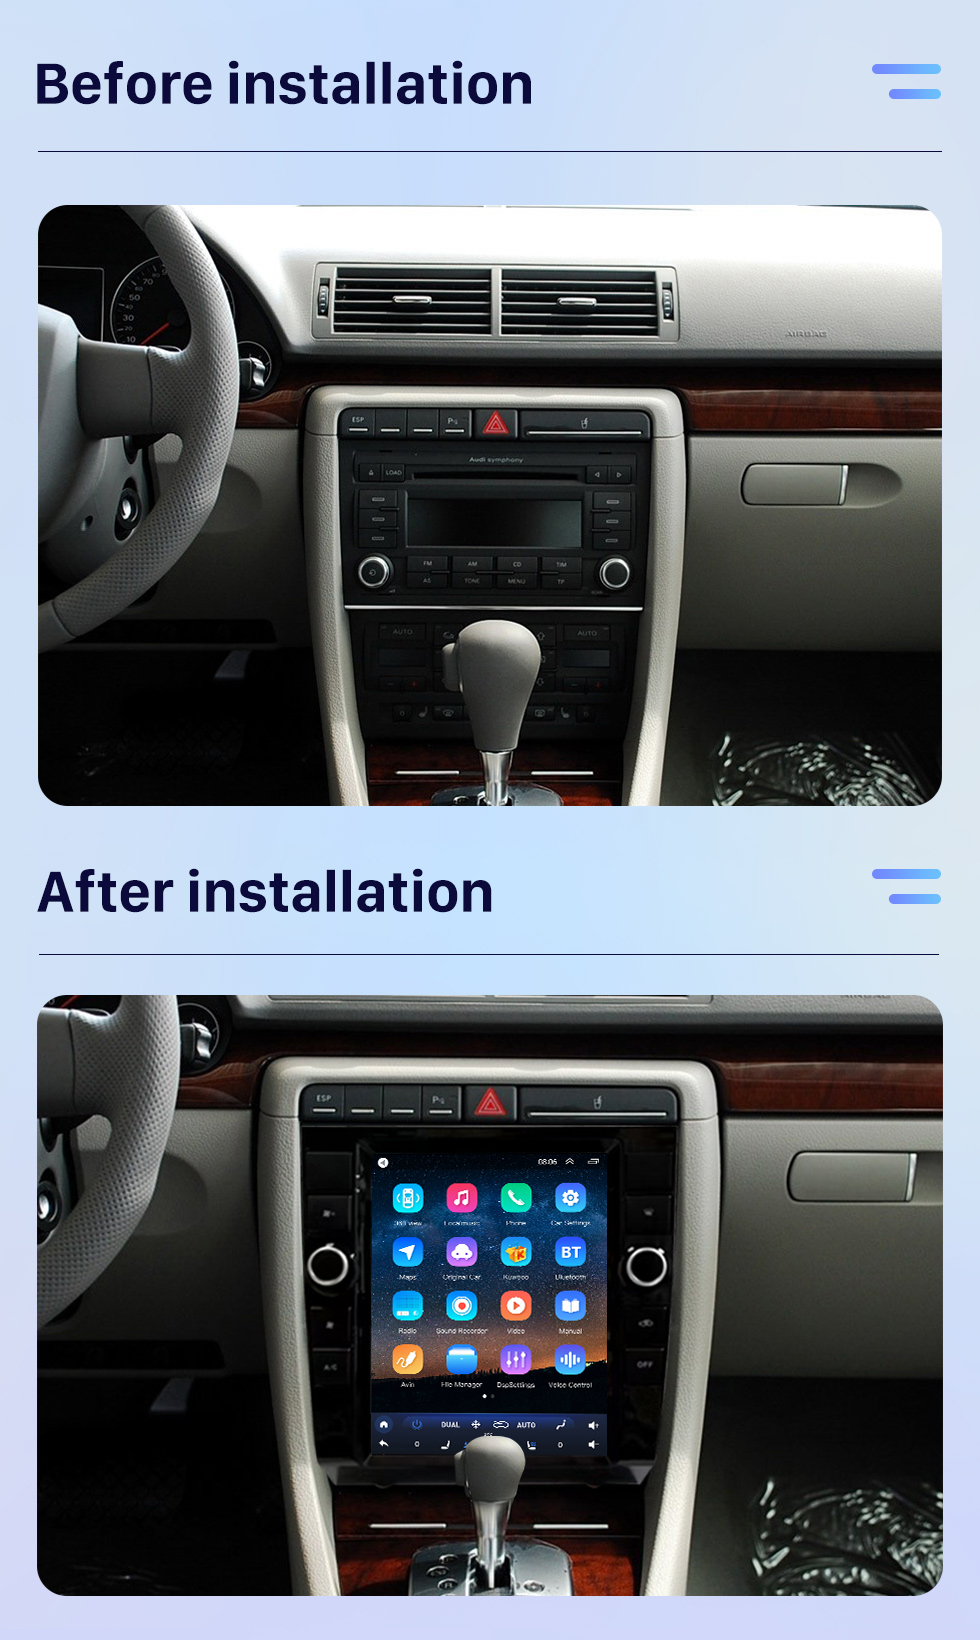 Seicane Для Audi A4 2002-2008 гг. Обновленный Android 10 Radio Stereo с 9,7-дюймовым сенсорным экраном. Встроенная поддержка Carplay DSP. 3D-навигация. Управление на рулевом колесе. Камера 360 °.